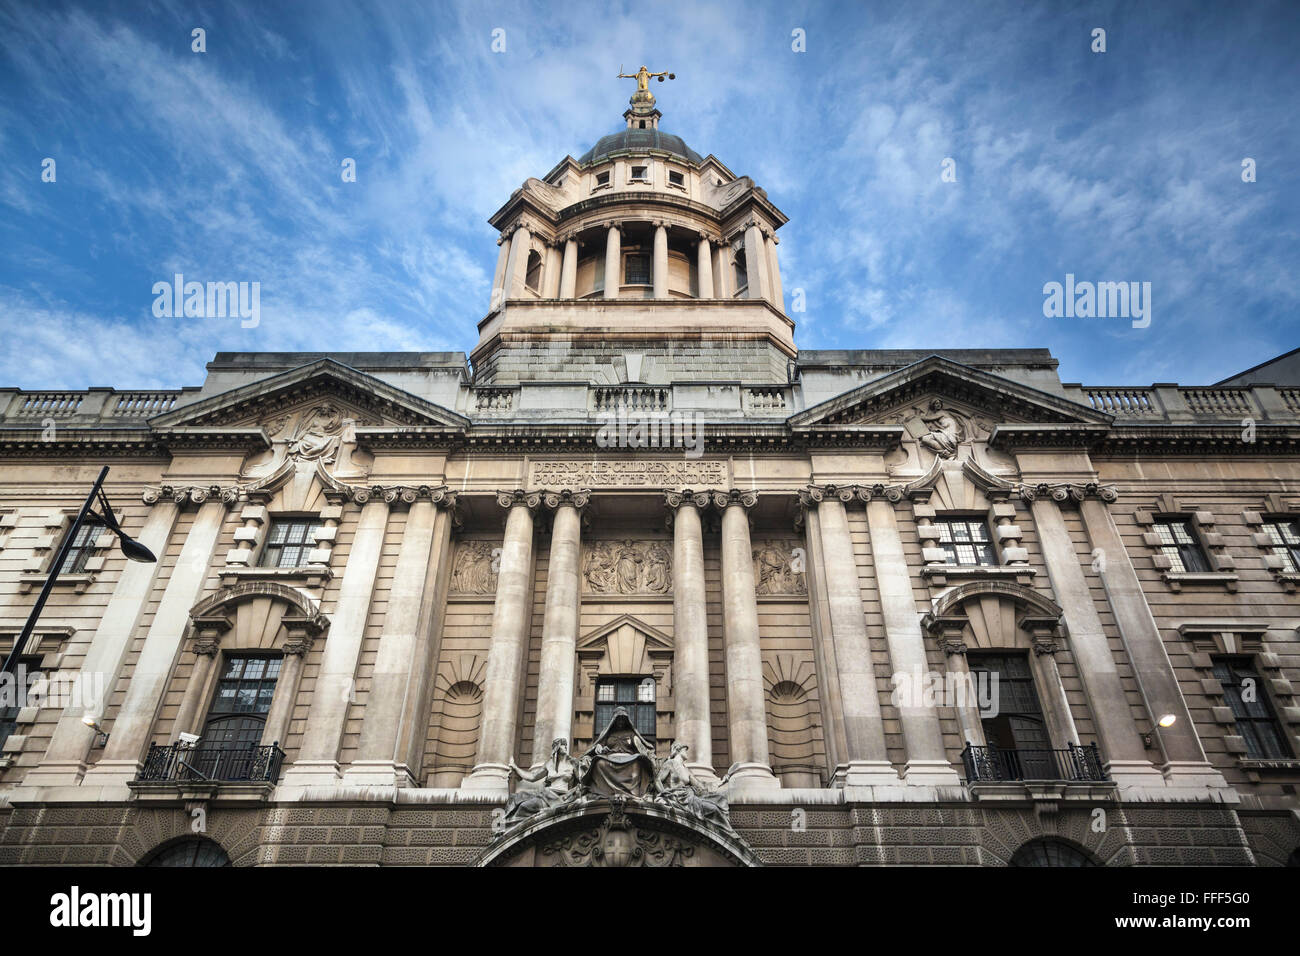 Façade du bâtiment 1900 pour la Cour pénale centrale, connue sous le nom de Old Bailey, dans le centre de Londres. La justice statue sur le dessus. Banque D'Images